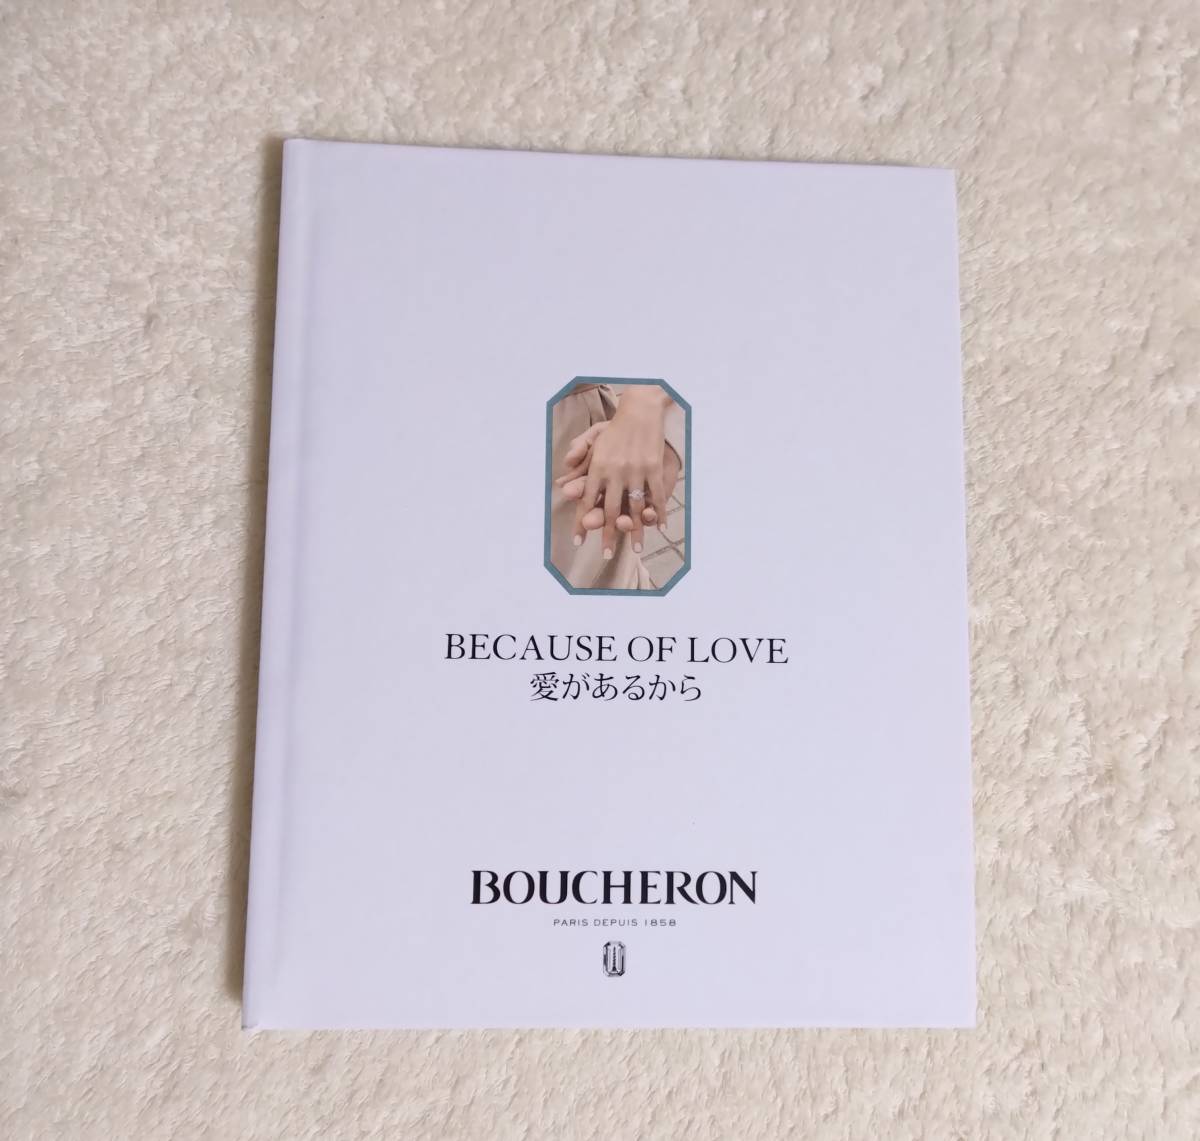 BOUCHERON Boucheron ювелирные изделия каталог не использовался 